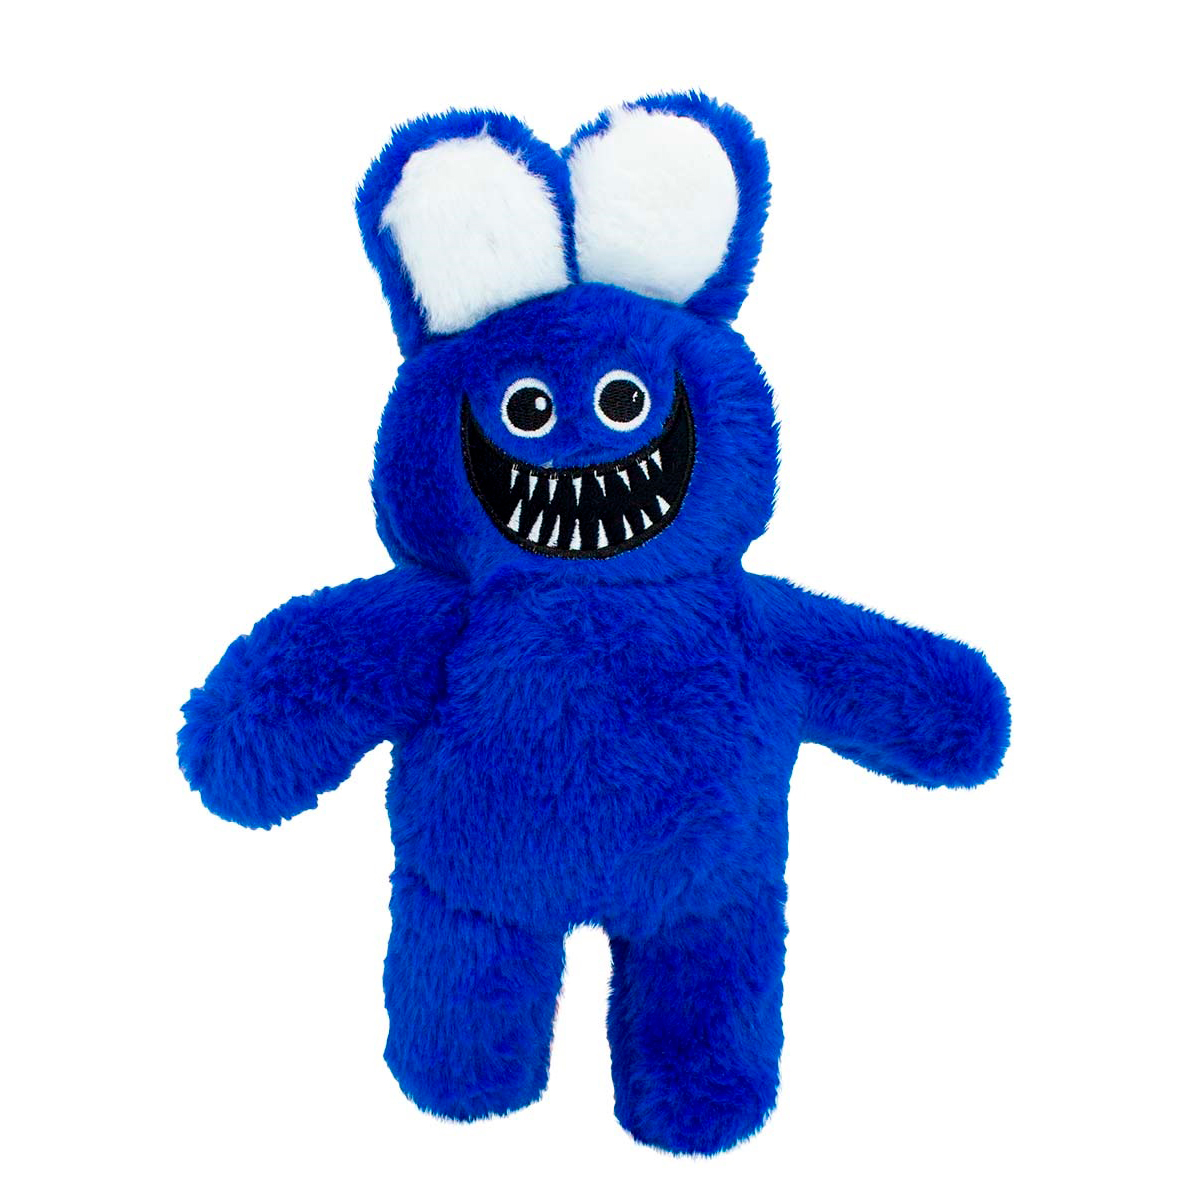 Мягкая игрушка Михи-Михи huggy Wuggy Мистер Хоппс синяя 30см - фото 1